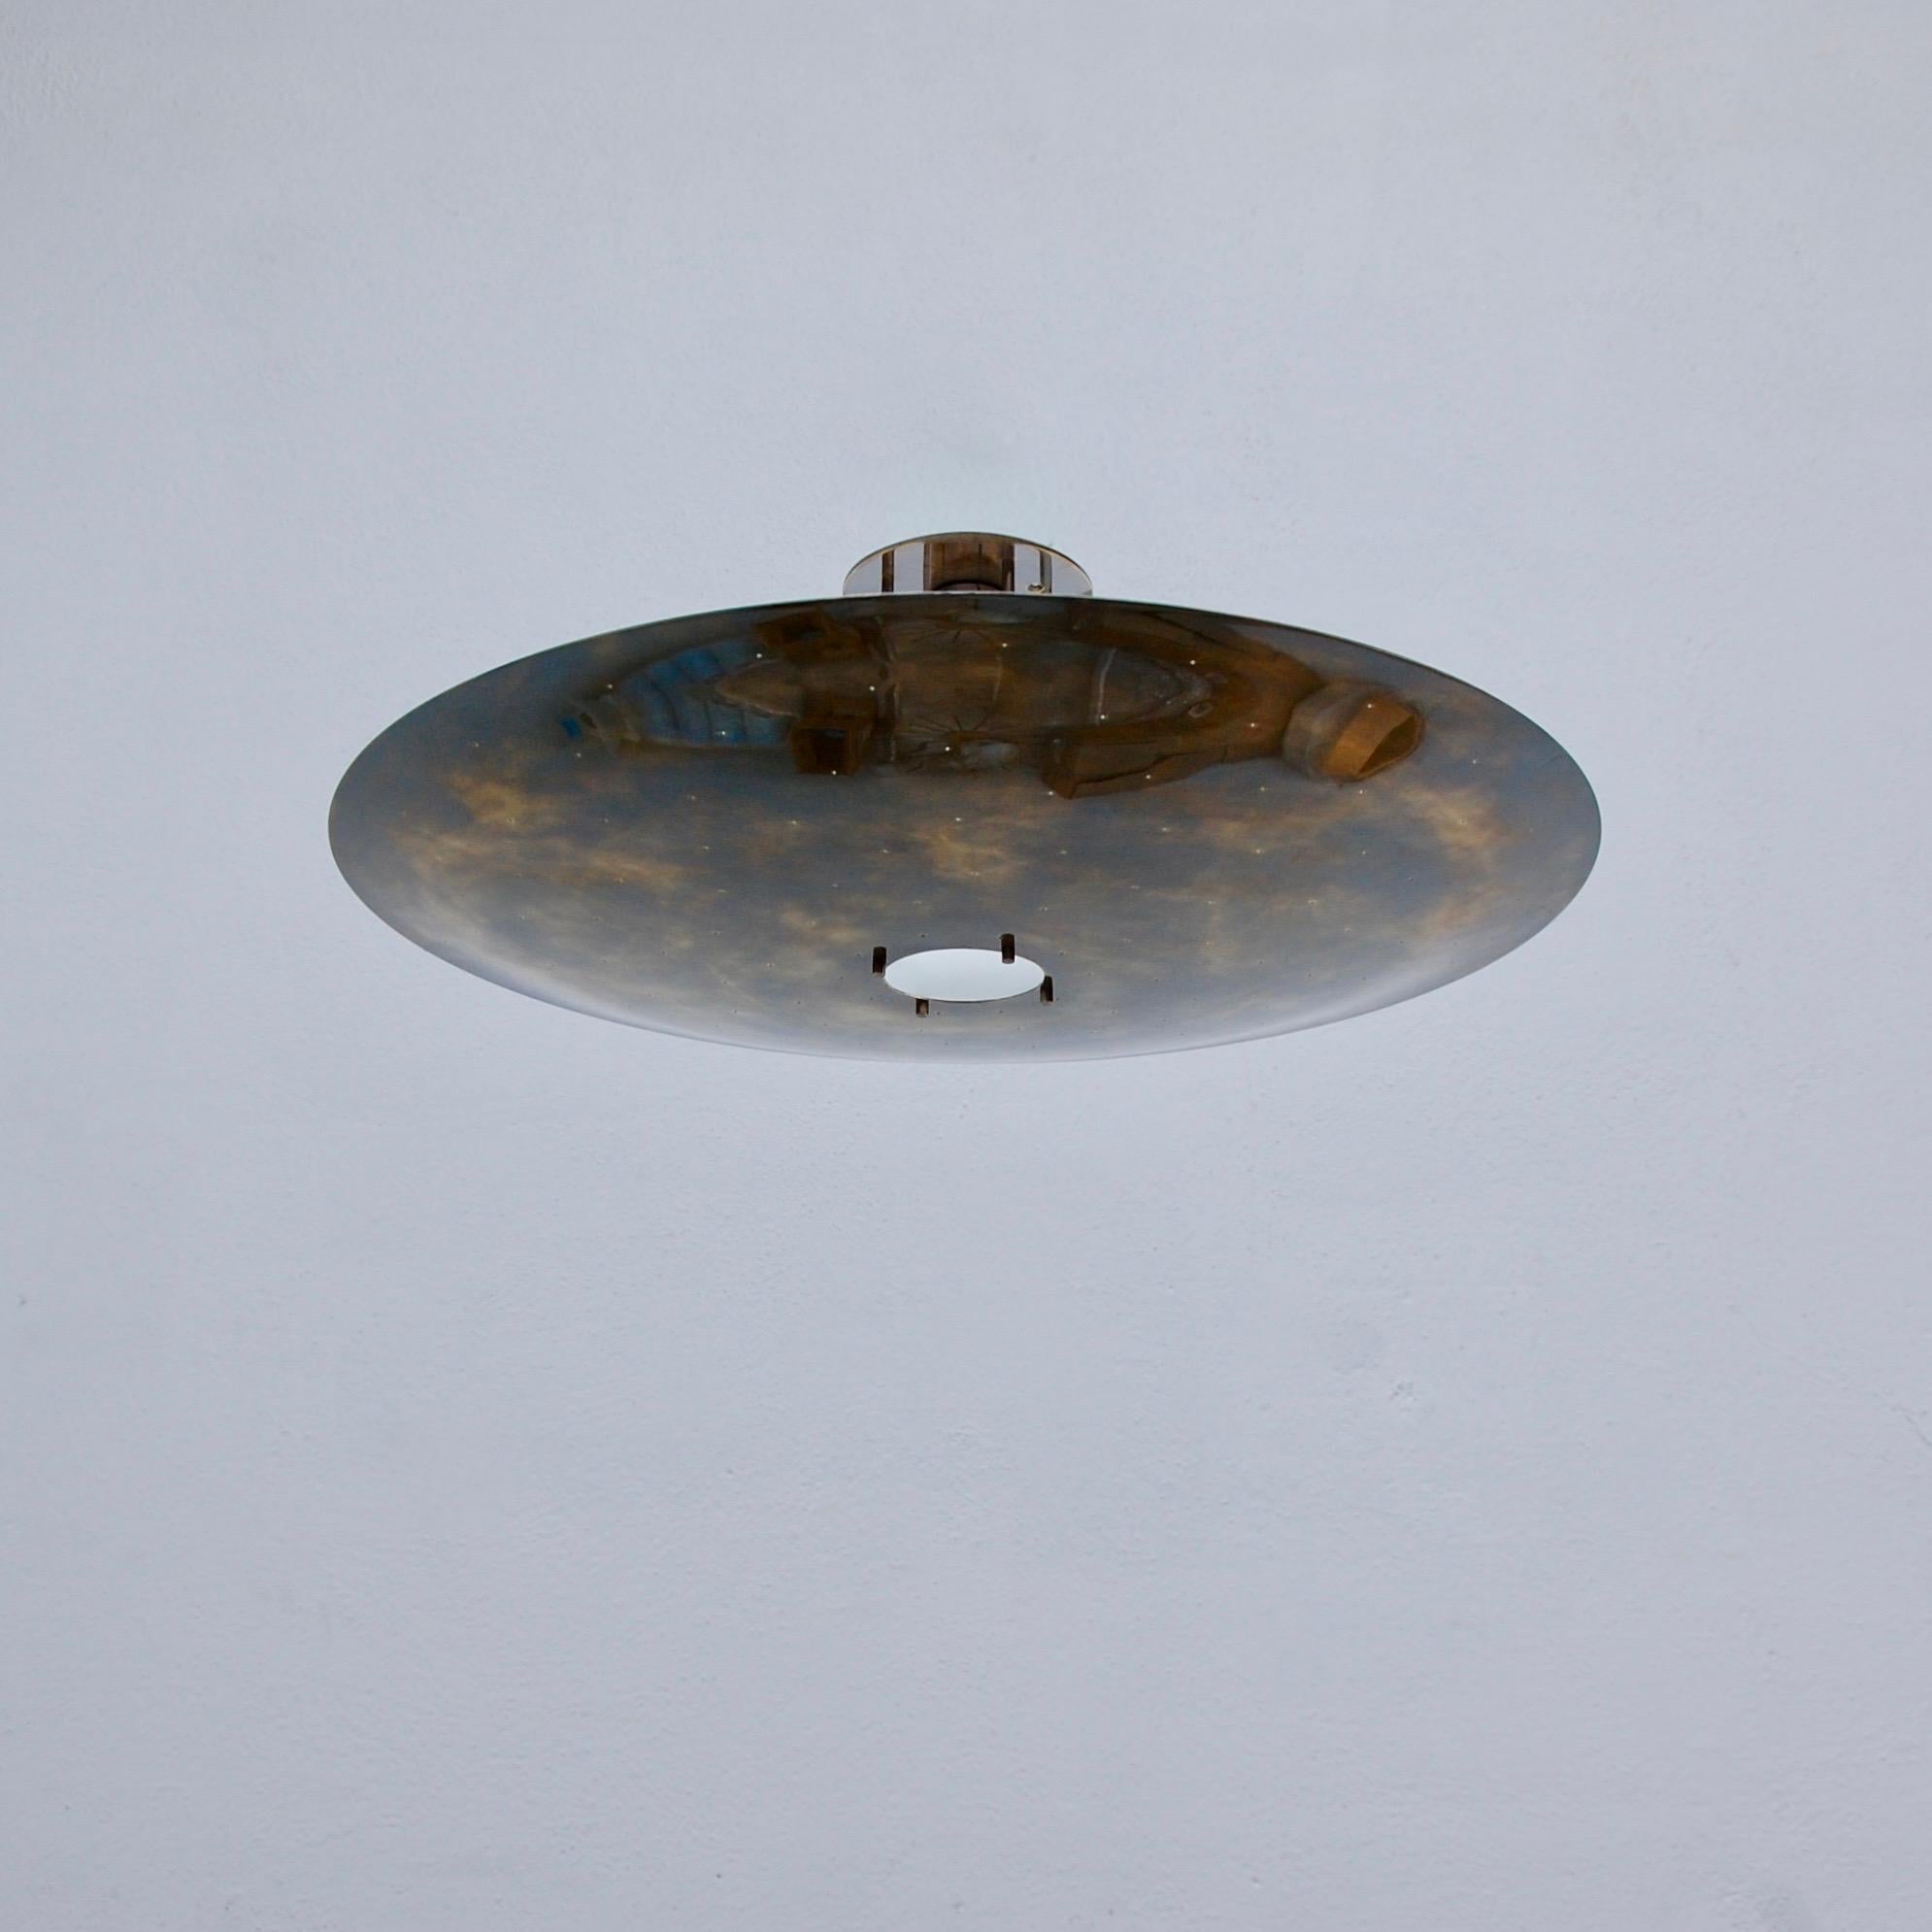 Plafonnier LUFO à dôme en laiton perforé de Lumfardo Luminaires. Faisant partie de notre collection contemporaine, le plafonnier LUFO est en finition patine foncée. Des perforations manuelles encadrent un trou central plus large avec un petit